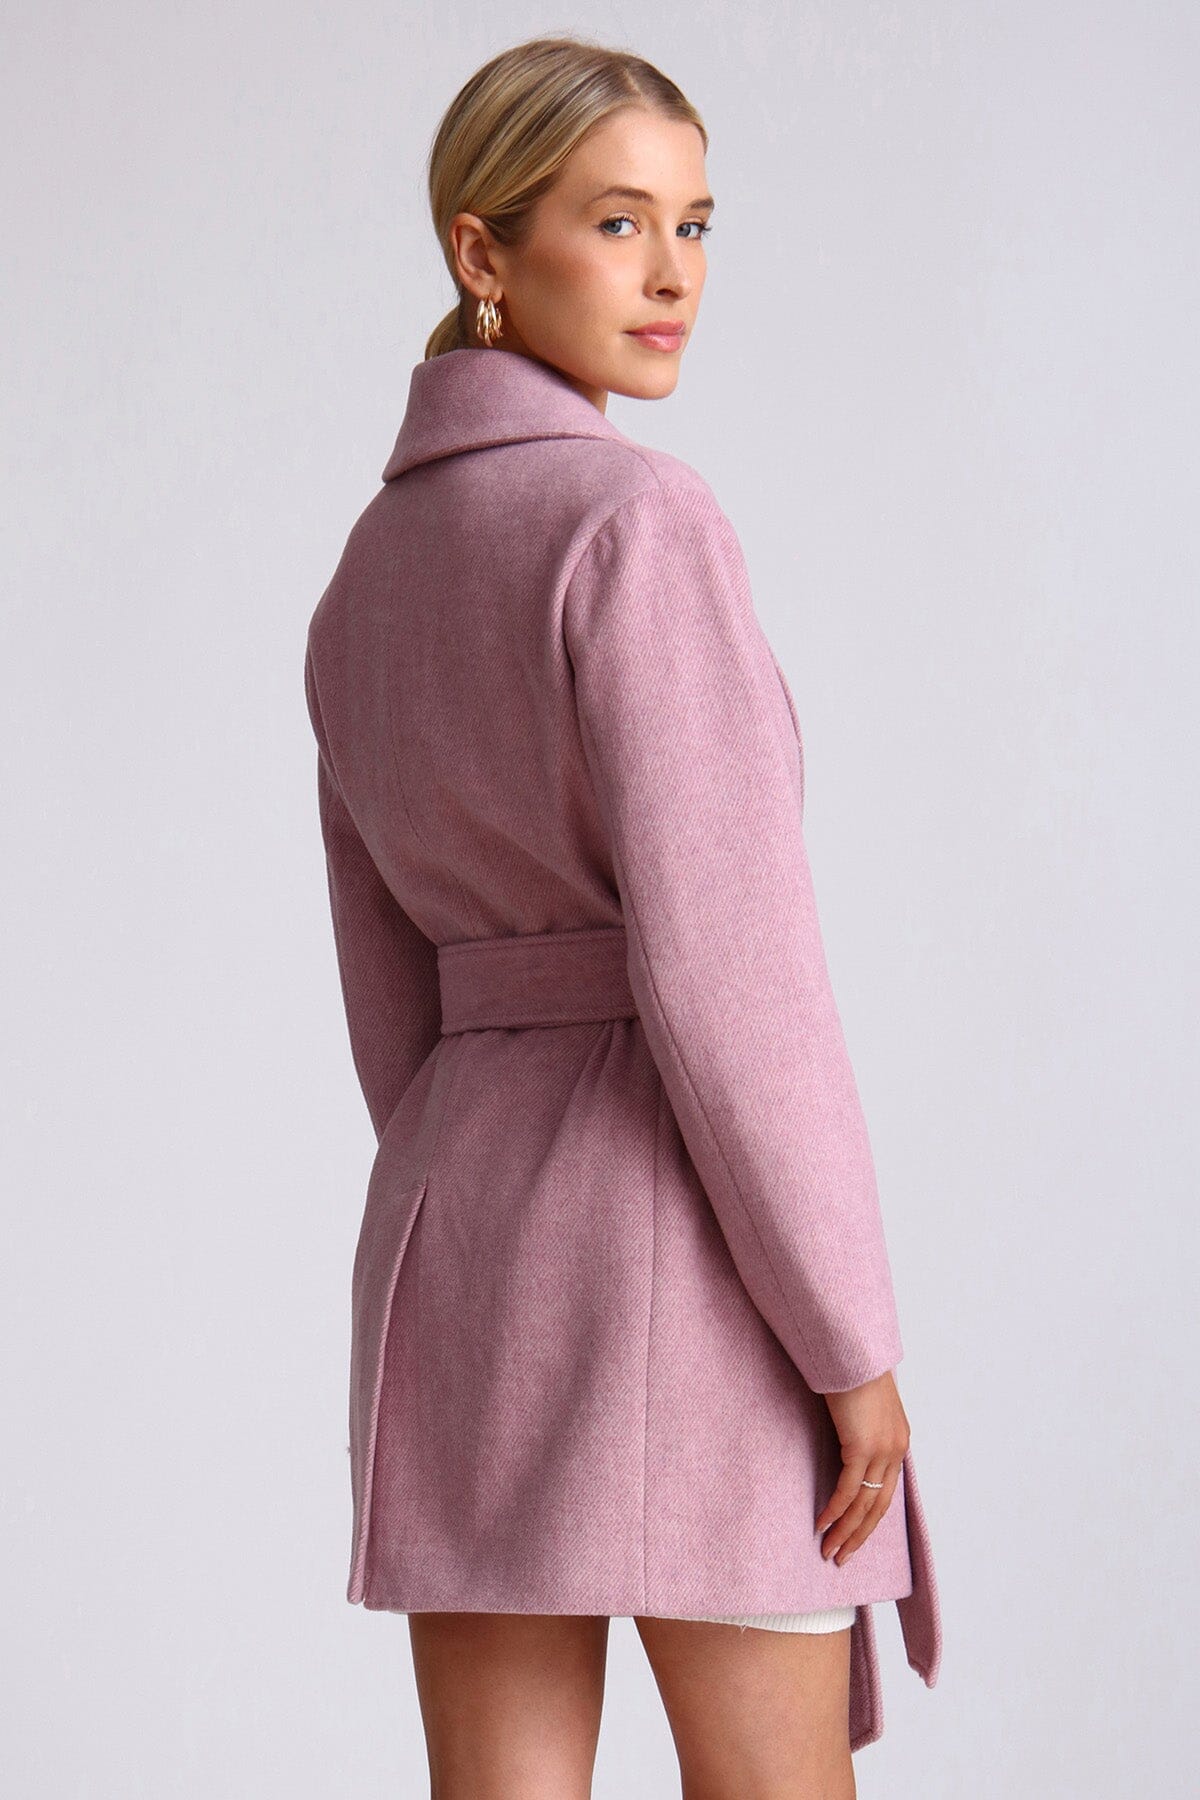 Light purple wool blend belted shawl collar peacoat coat - figure flattering cute work appropriate fall outerwear for women